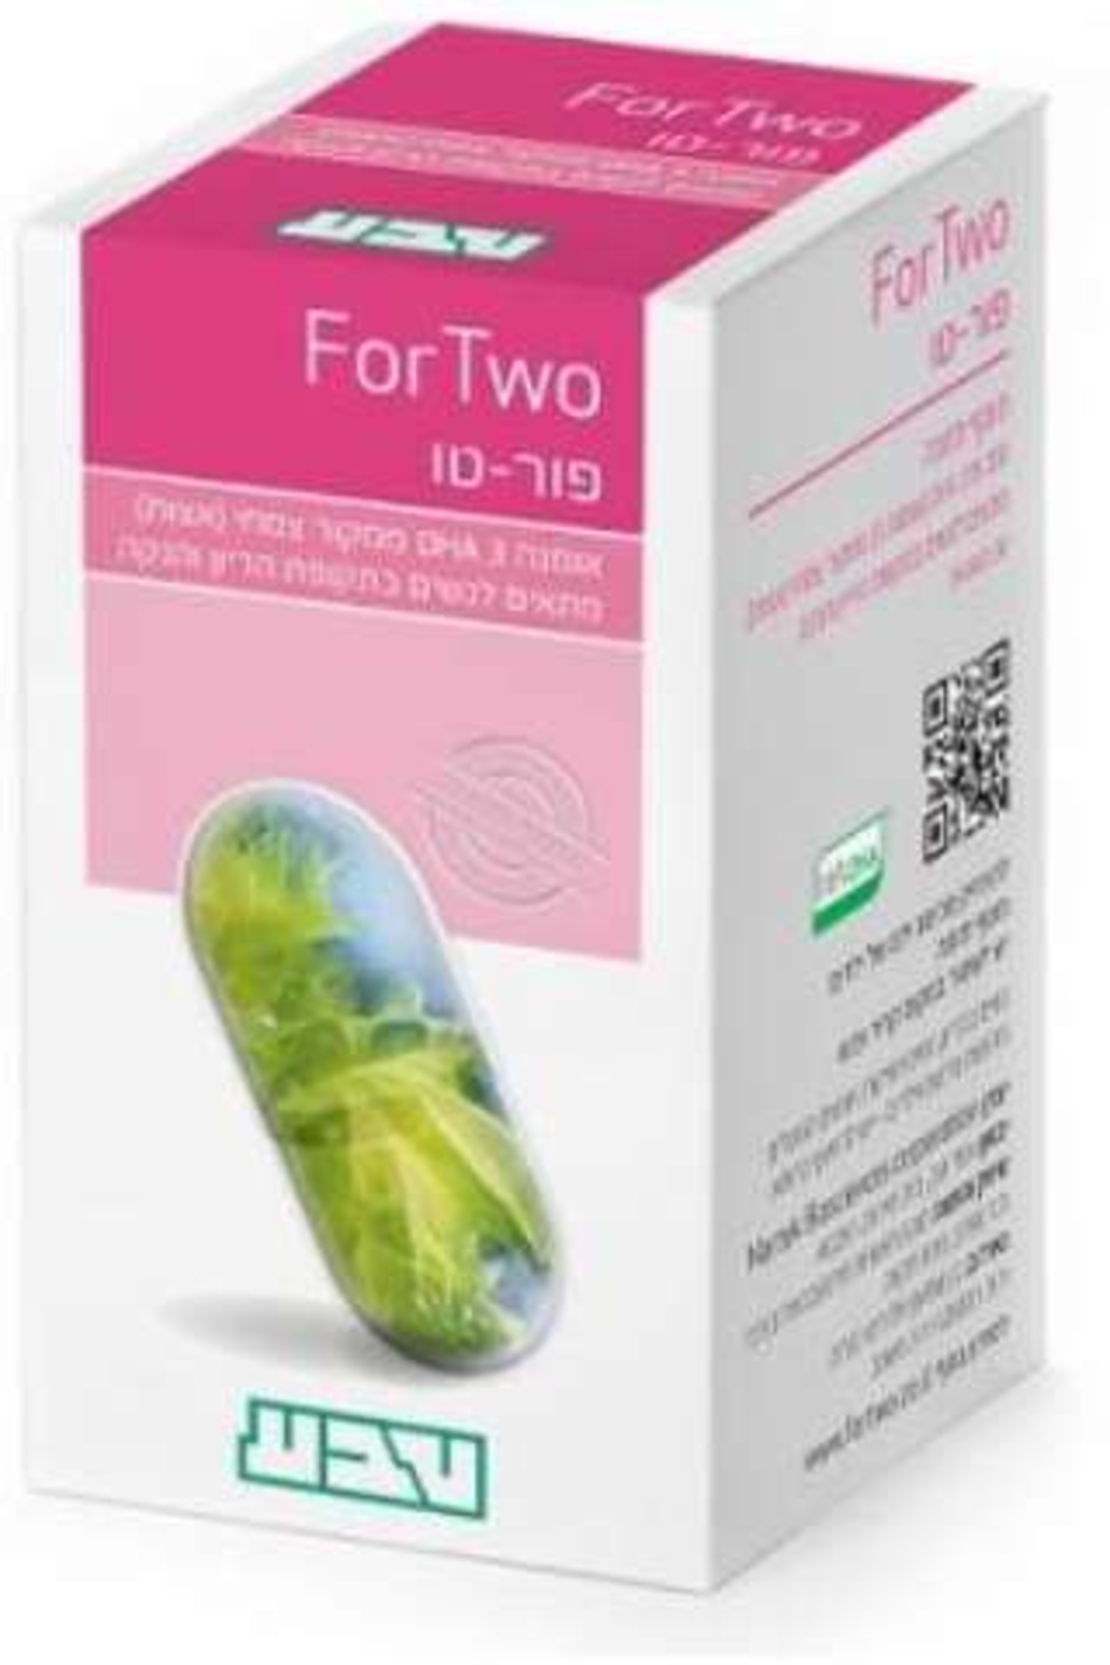 פור-טו טבע - אומגה 3 לנשים בהריון ומניקות For Two